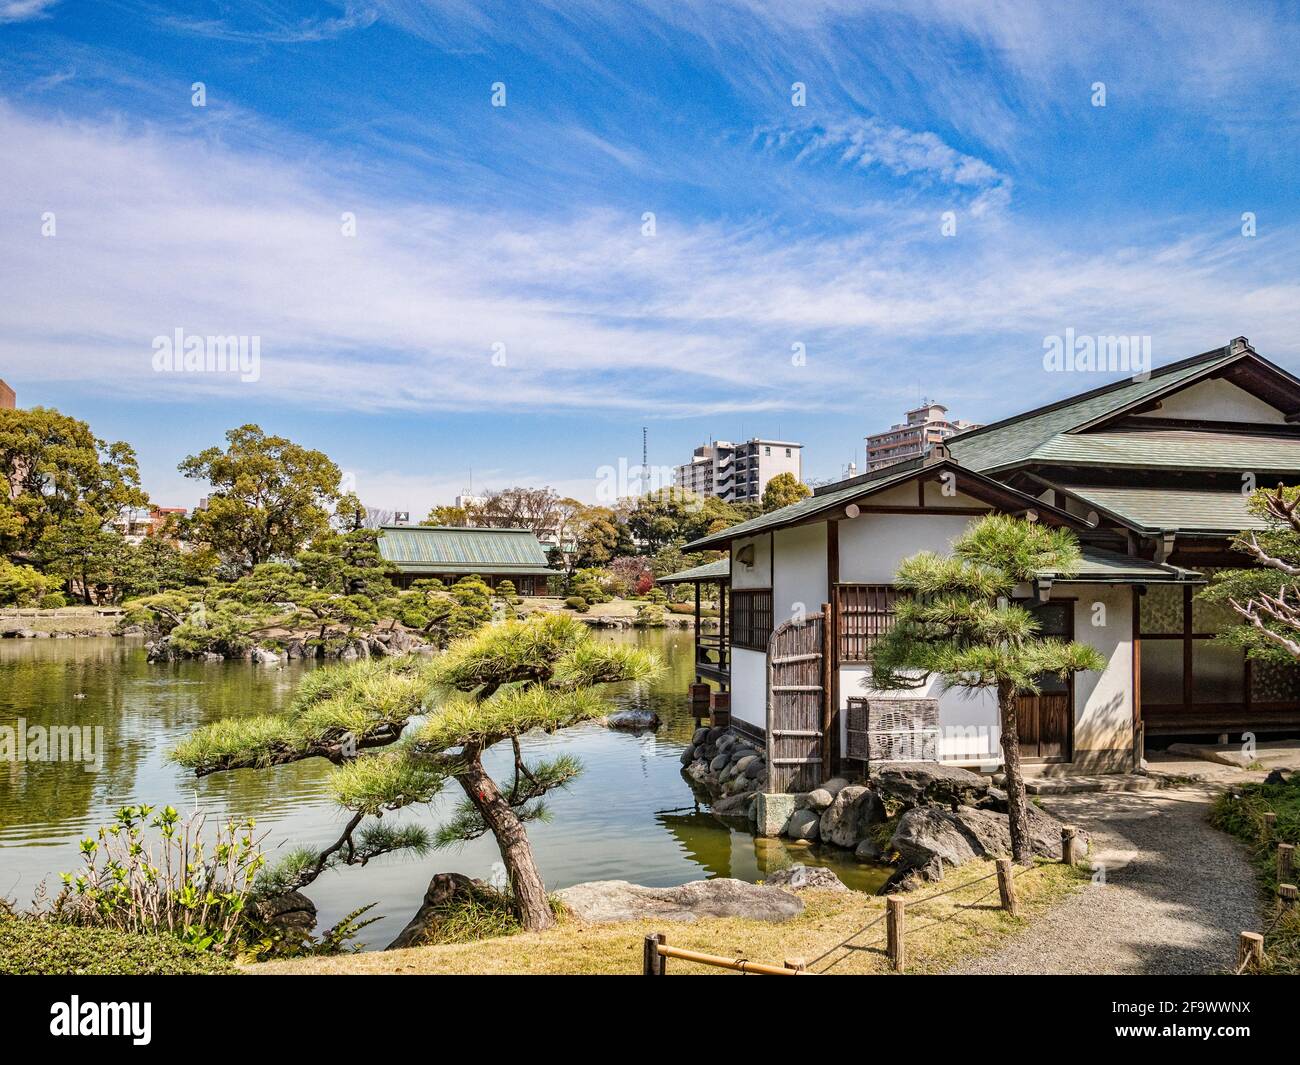 5 aprile 2019: Tokyo, Giappone - Lago e padiglione in Kyu-Shiba-rikyu Gardens, un giardino paesaggistico in stile tradizionale nel centro di Tokyo. Foto Stock